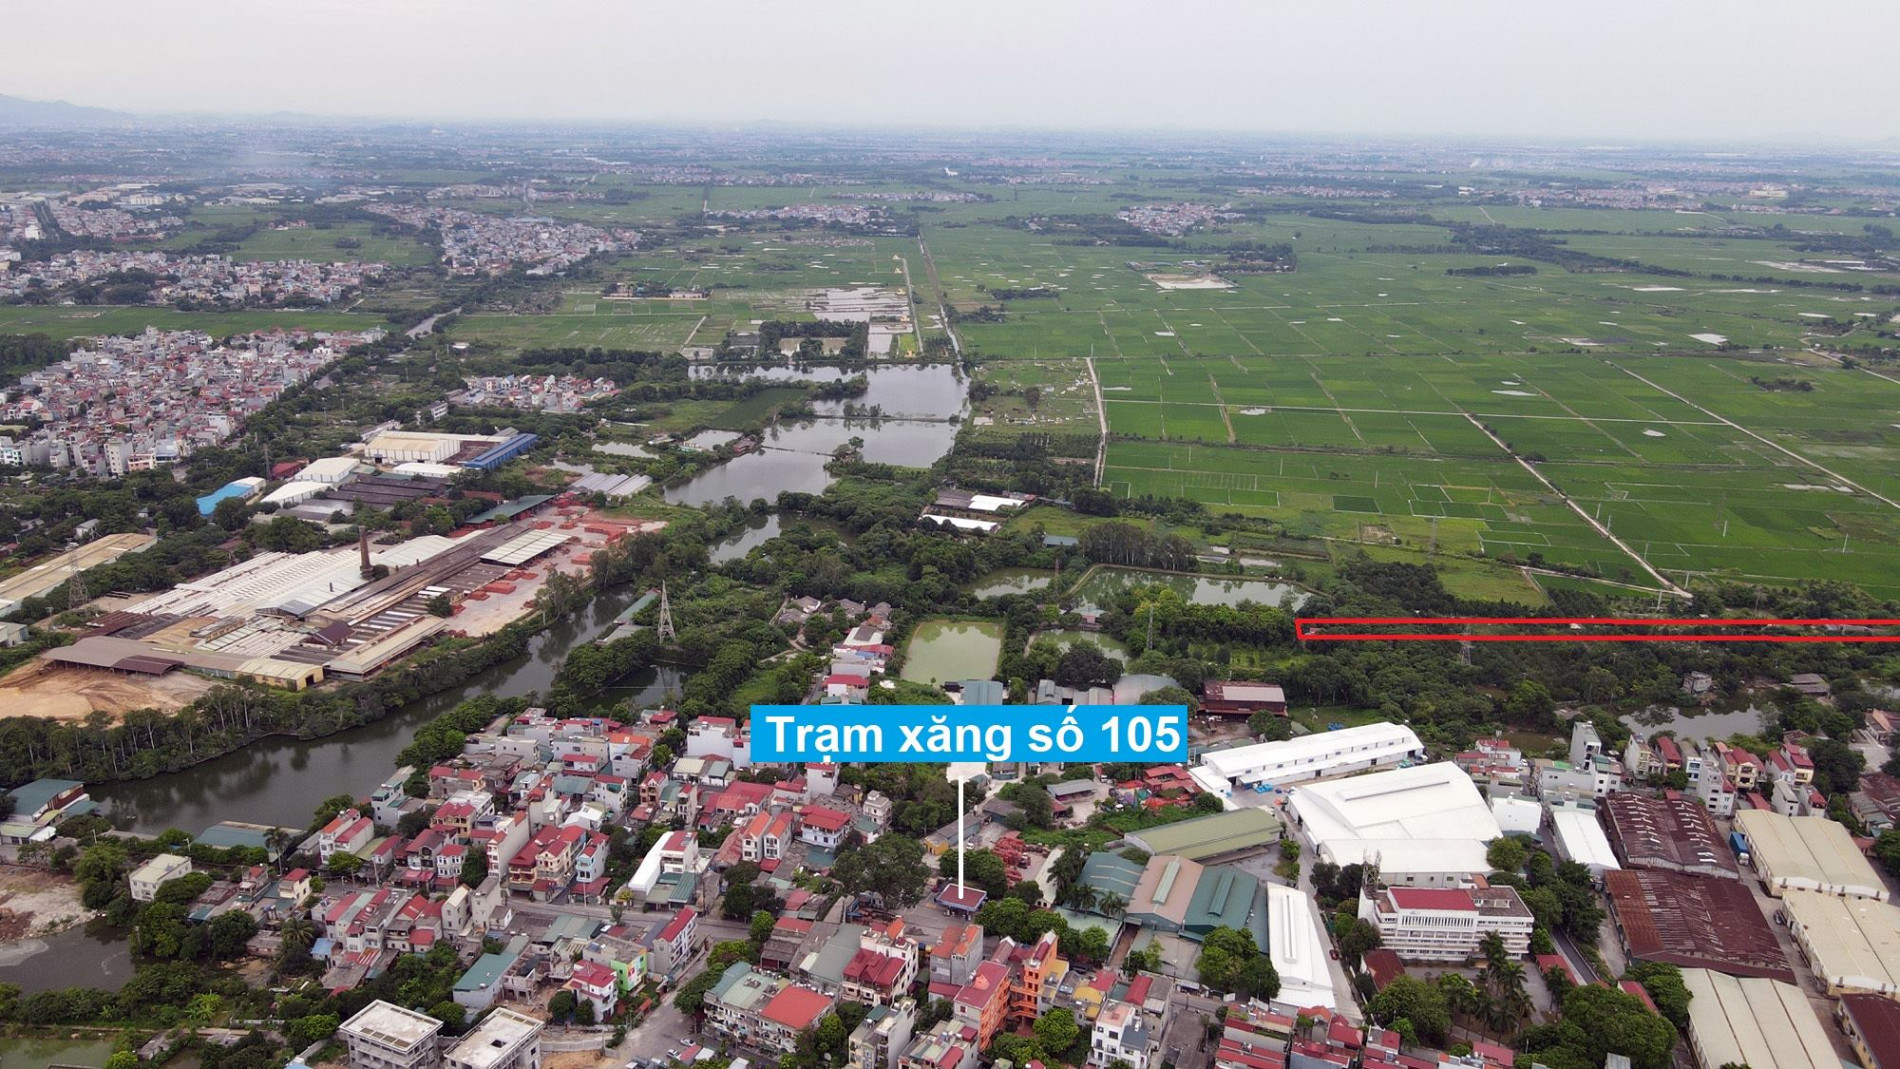 Đường sẽ mở theo quy hoạch ở xã Việt Hùng, Đông Anh, Hà Nội (phần 2)